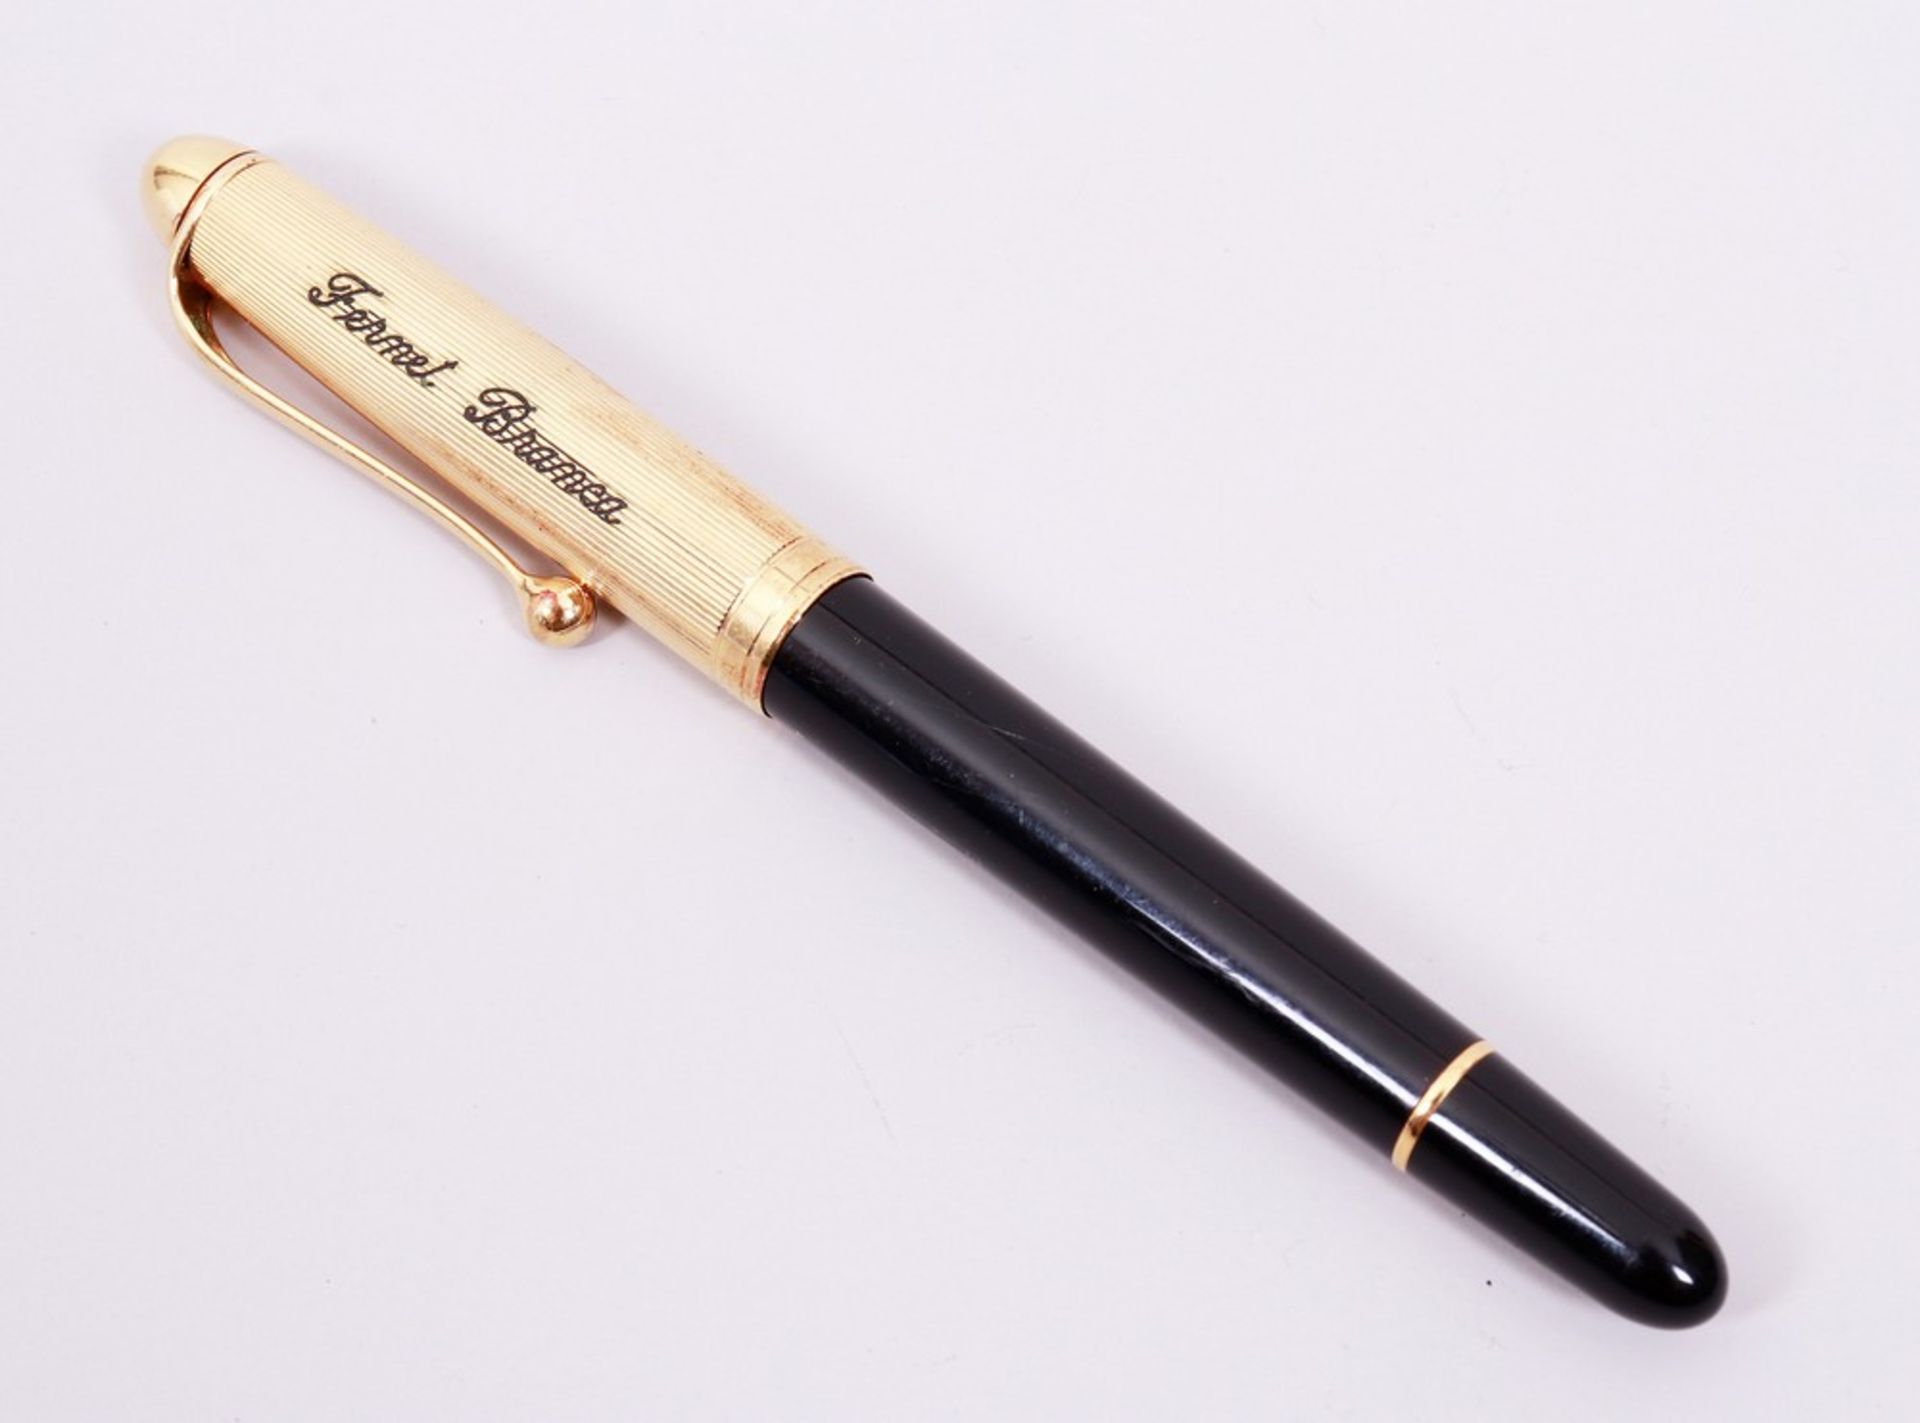 Ballpoint pen, Aurora, Italy, model "88", 21st C.